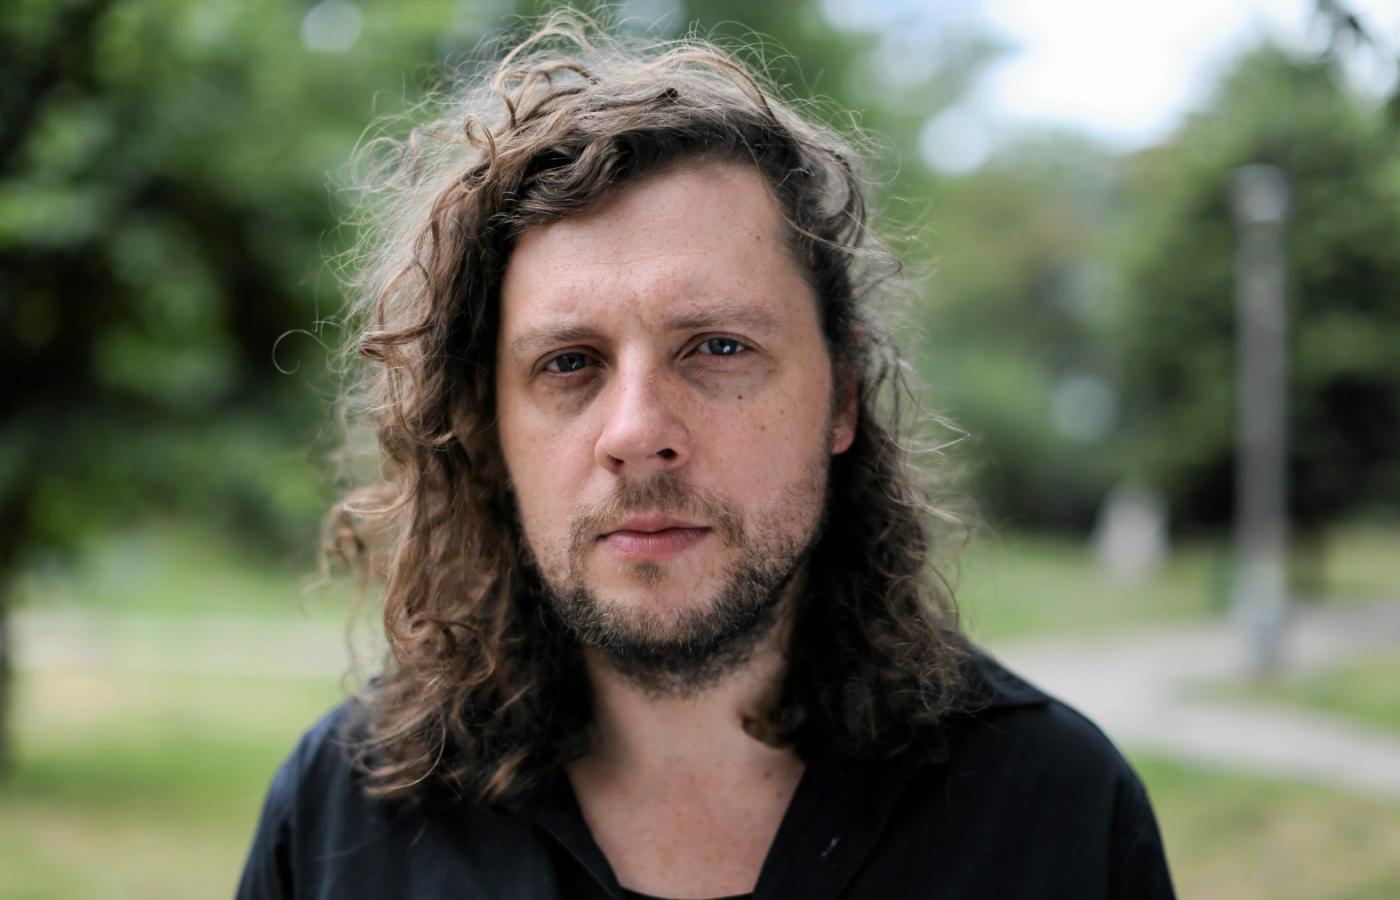 Raphael Rogiński (ur. 1977 r.) – uznawany za jednego z najzdolniejszych polskich gitarzystów swojego pokolenia.